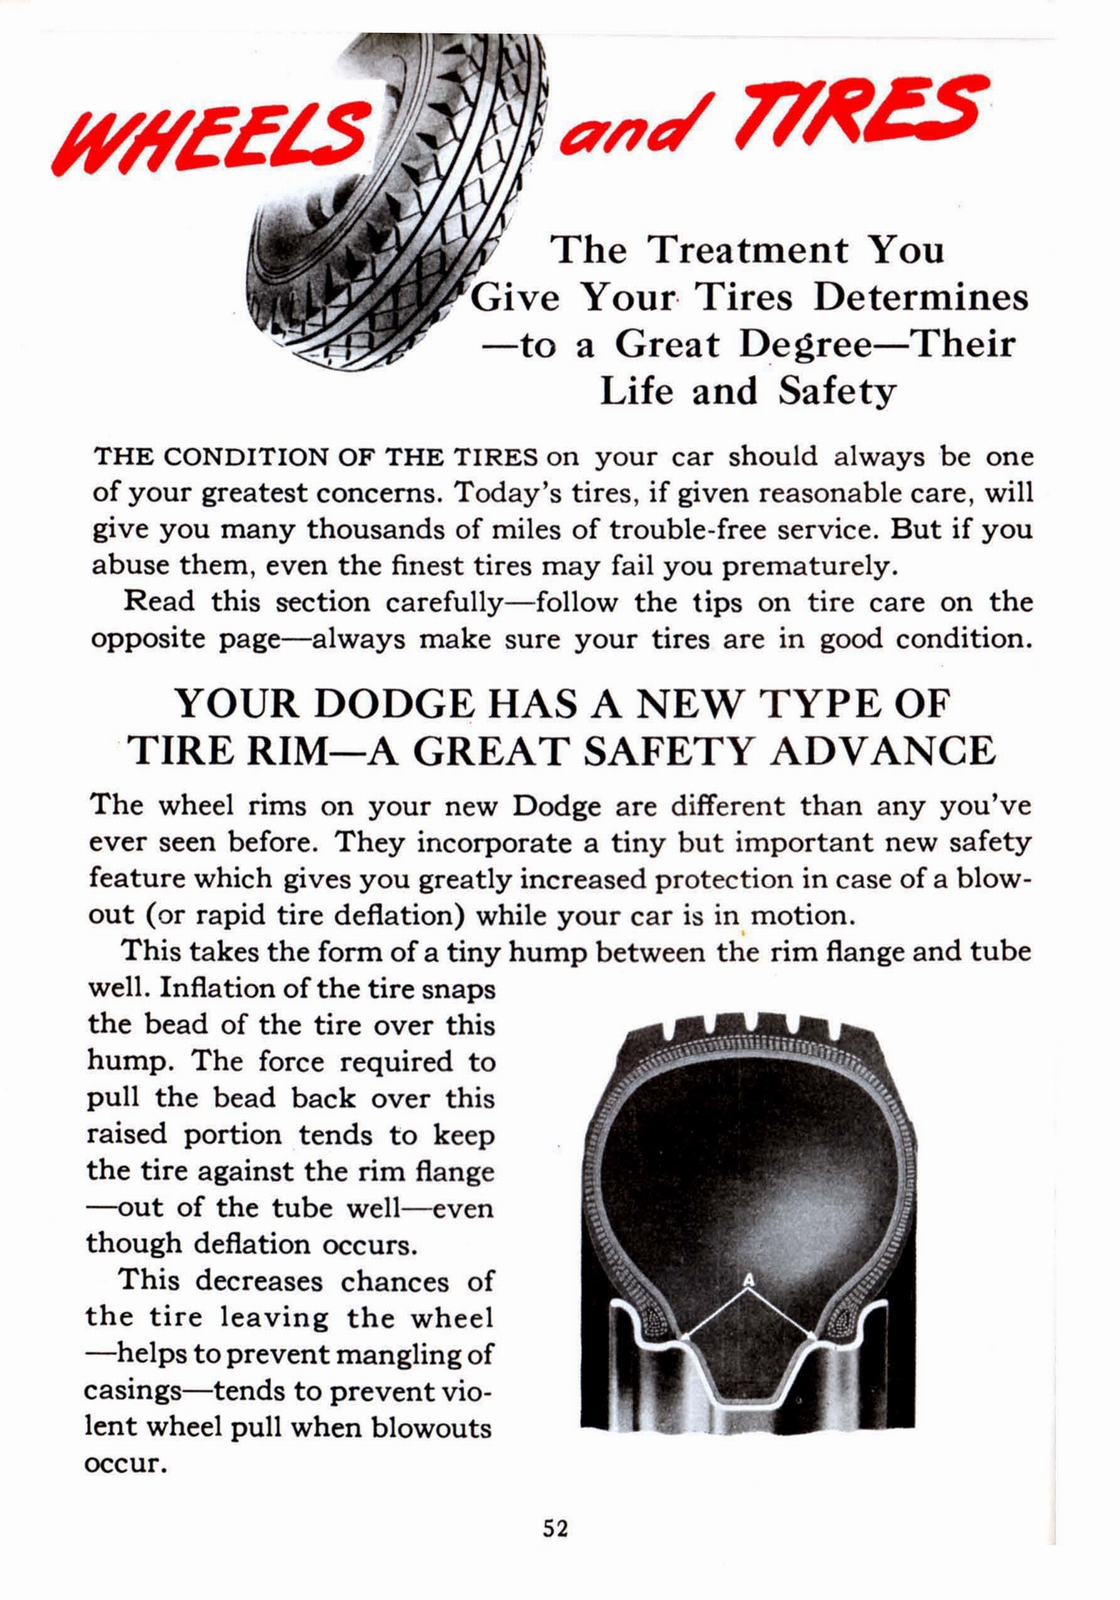 n_1941 Dodge Owners Manual-52.jpg